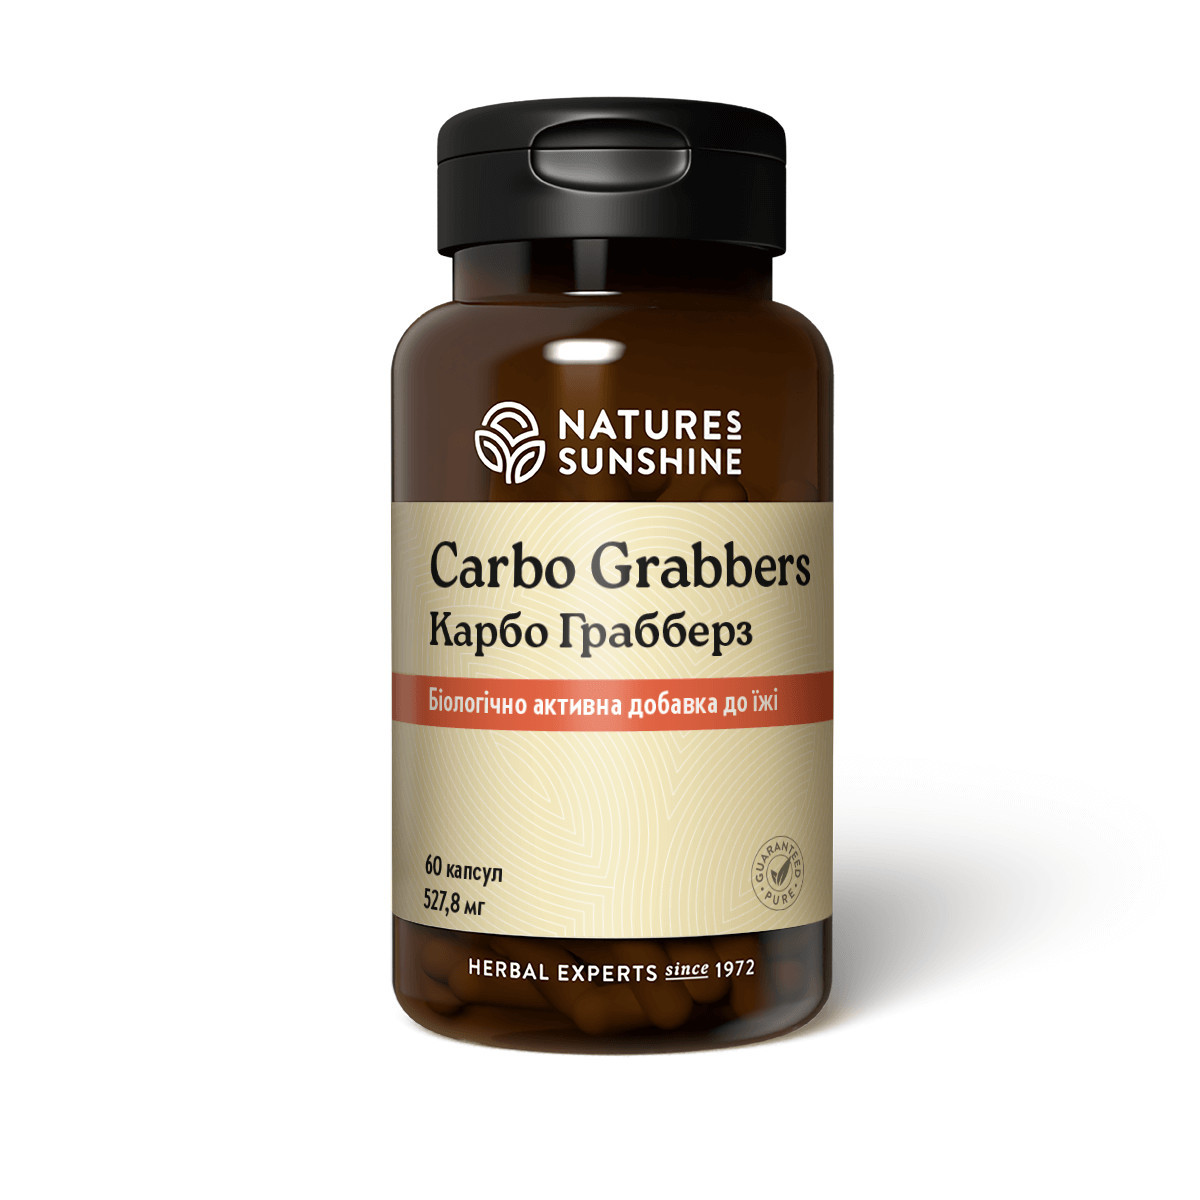 Карбо Греббарз (Carbo Grabbers) NSP — натуральний засіб для схуднення, зниження ваги.